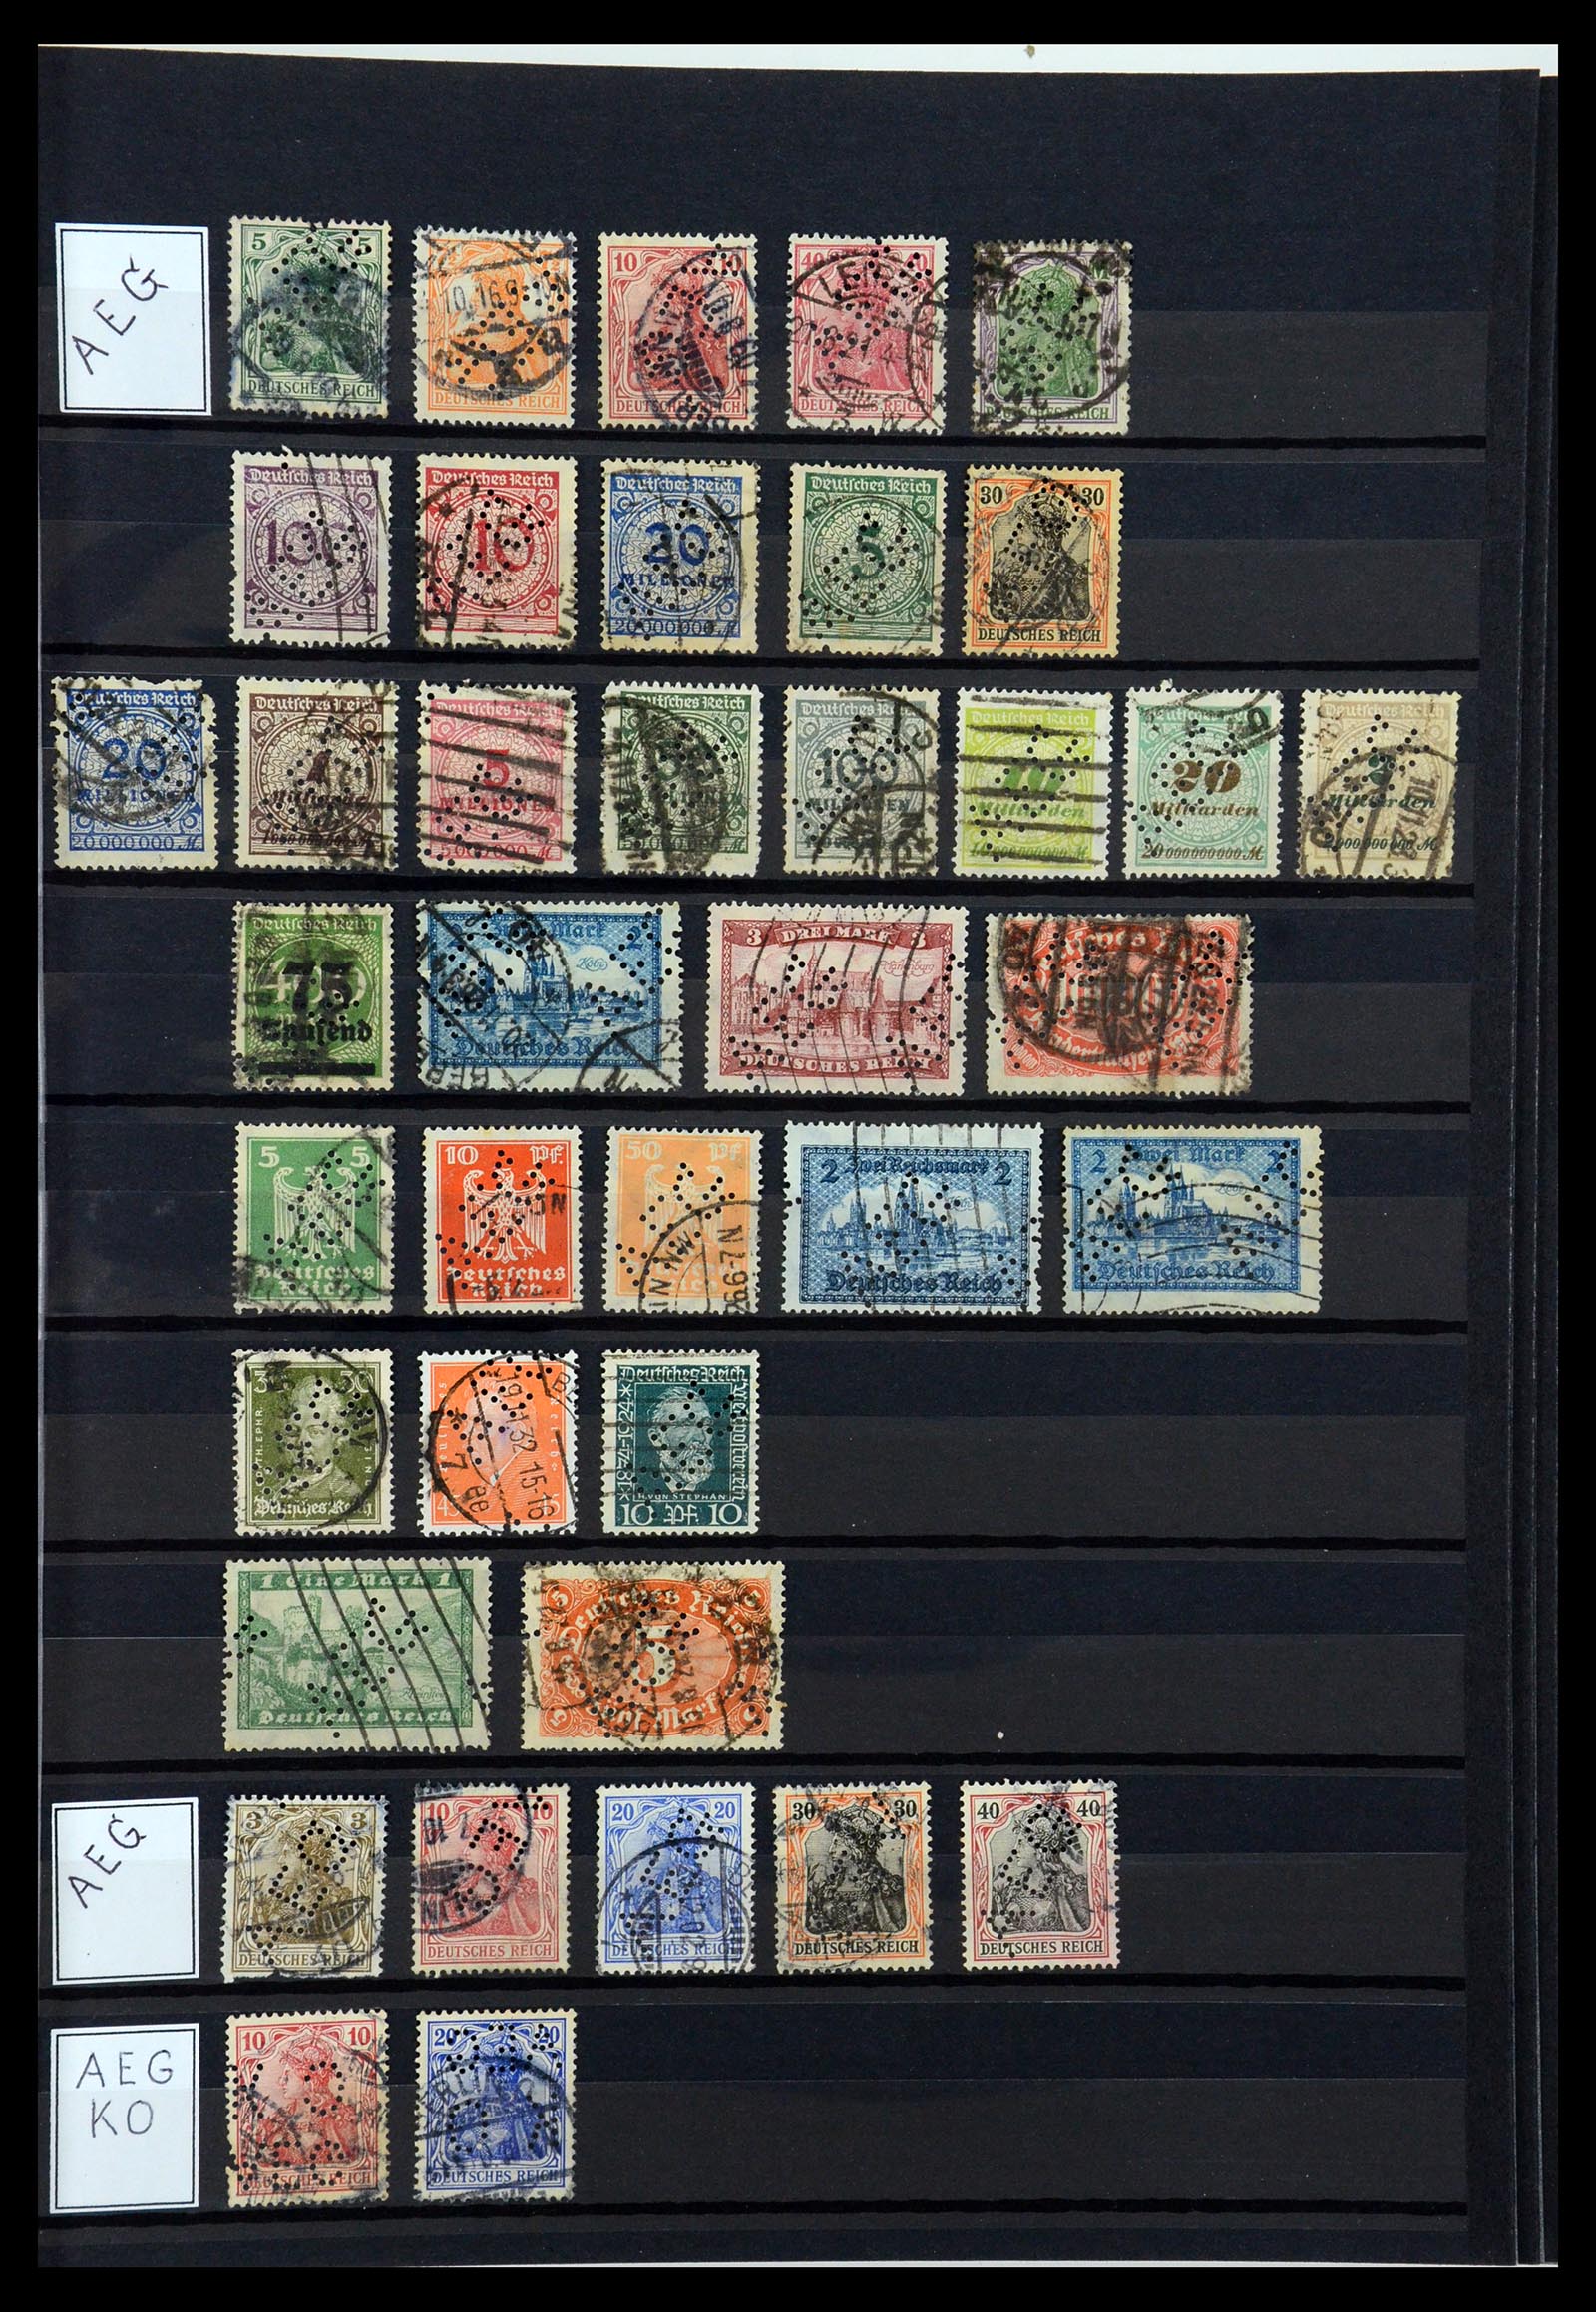 36405 011 - Stamp collection 36405 German Reich perfins 1880-1945.